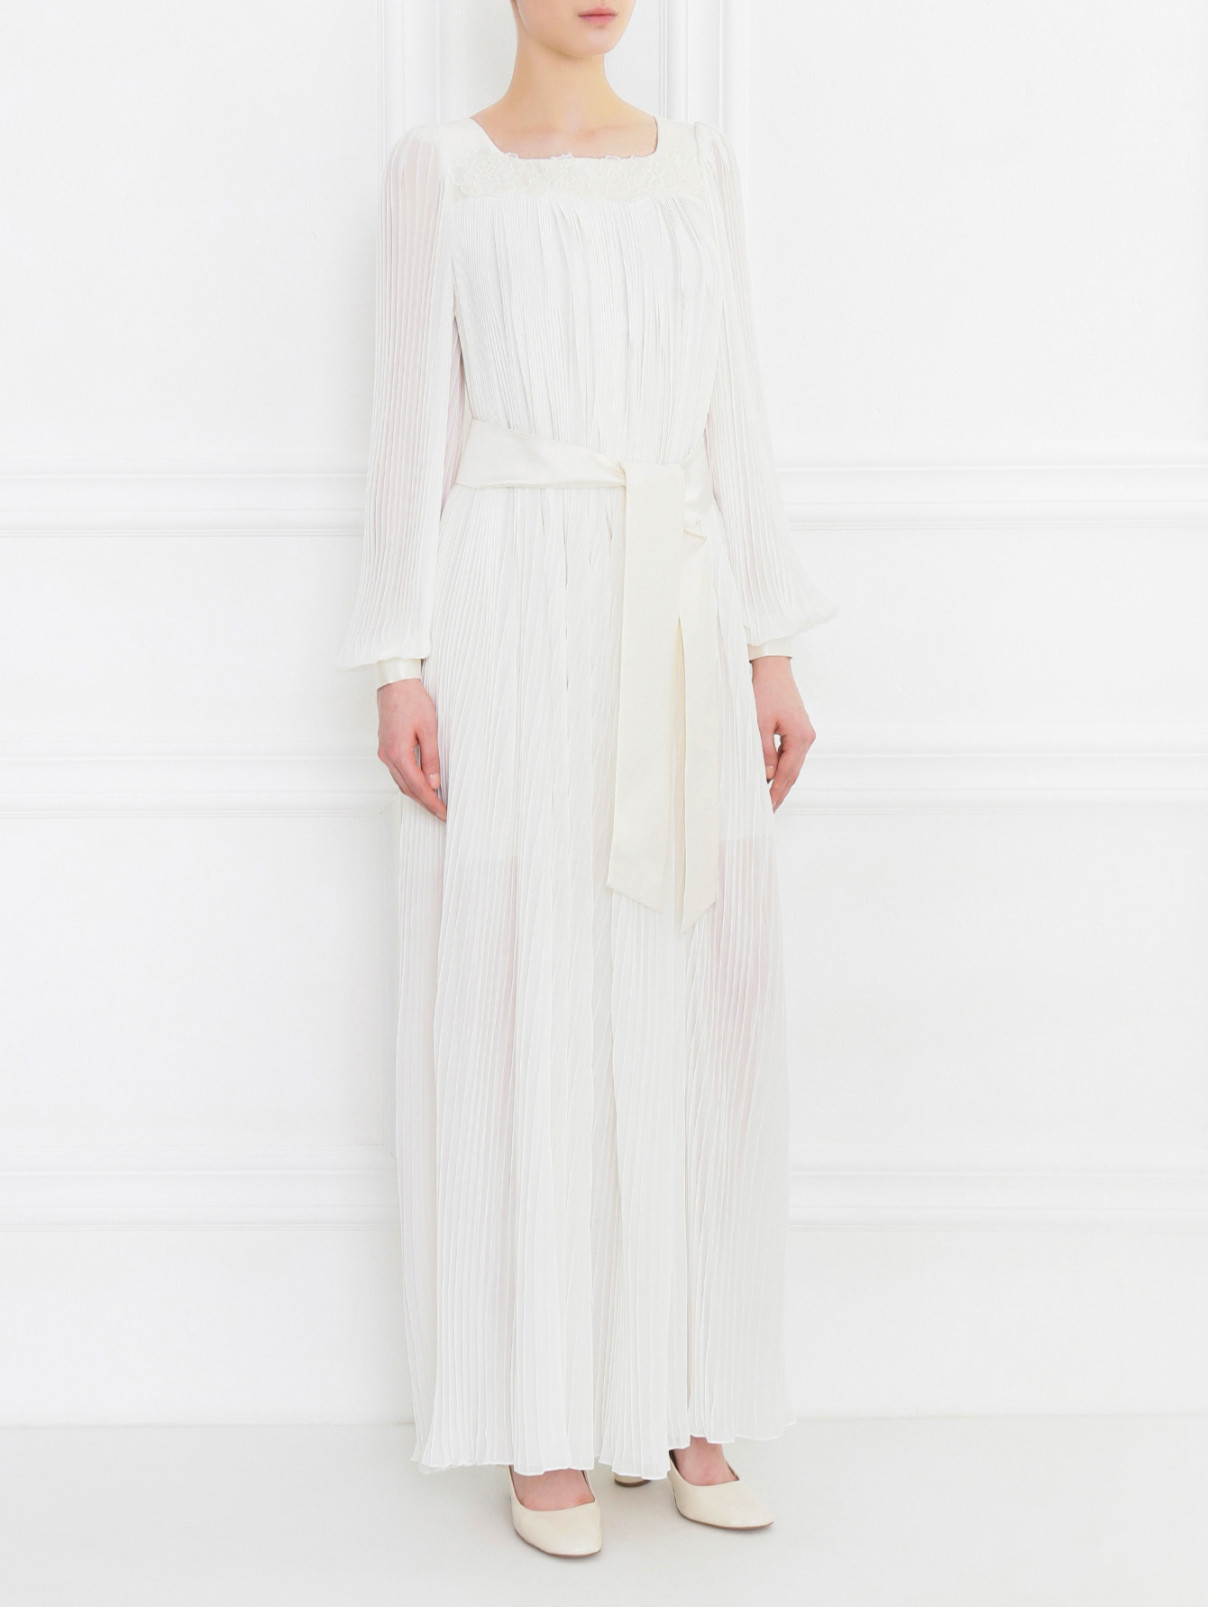 Платье A La Russe  –  Модель Общий вид  – Цвет:  Белый